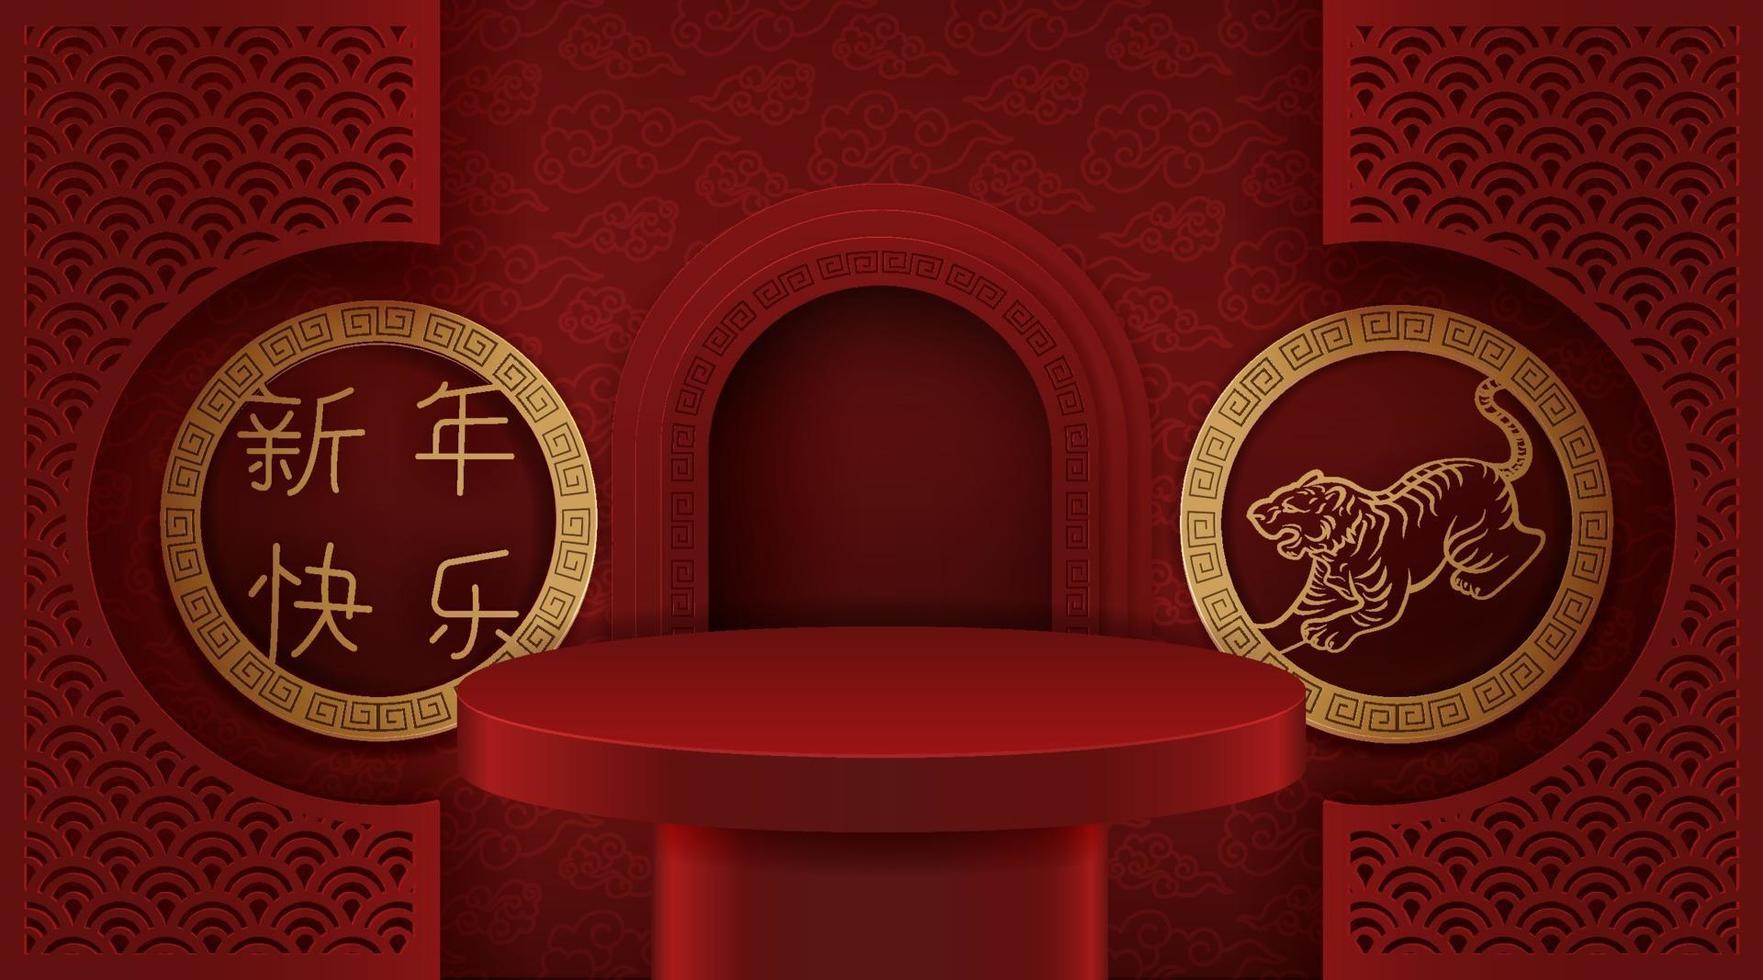 Podiumsbühne im chinesischen Stil, für chinesisches Neujahr und Festivals. vektor